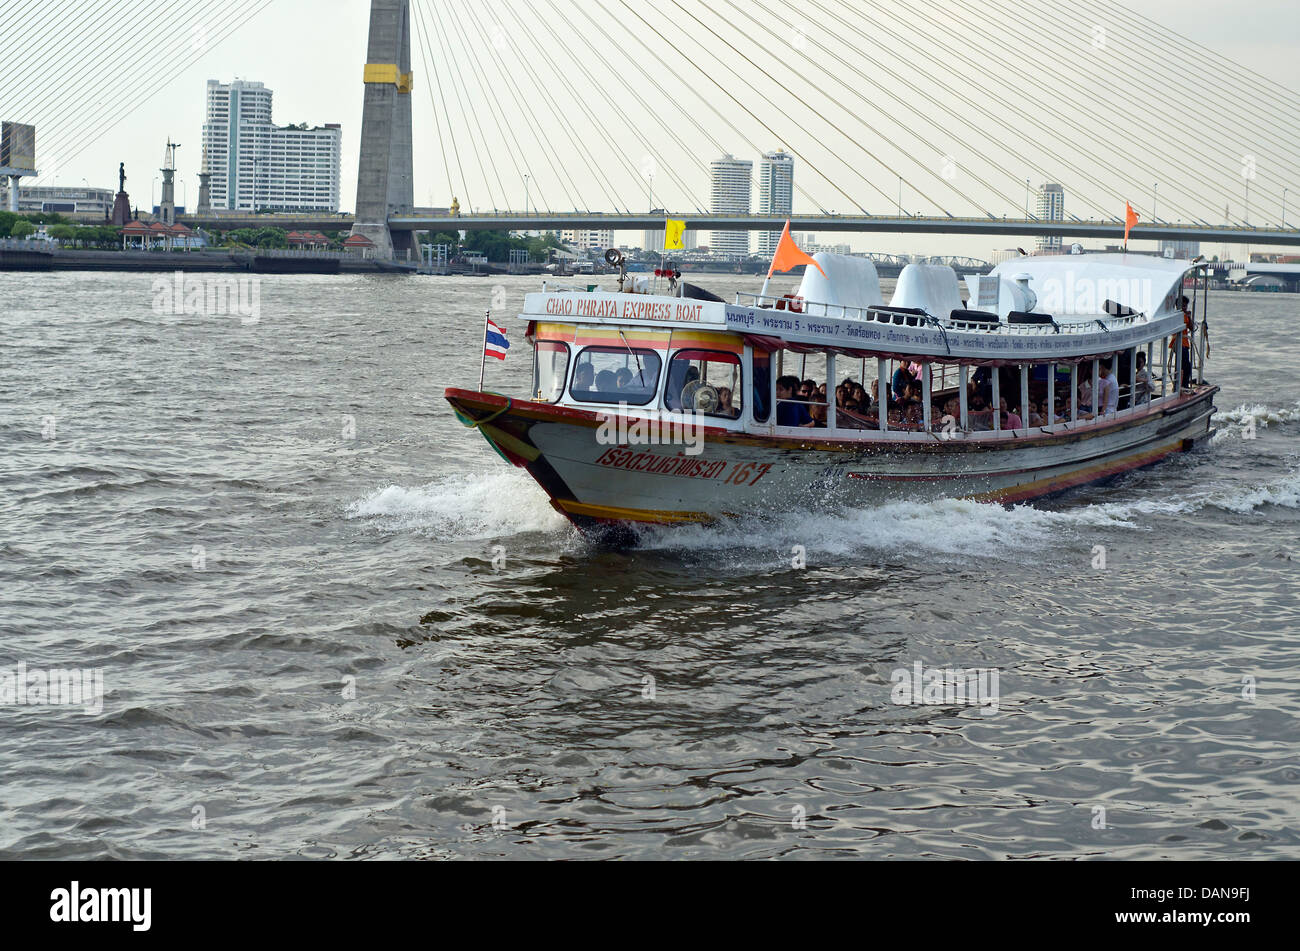 Boat on the Chao Phraya River, Bangkok Stock Photo